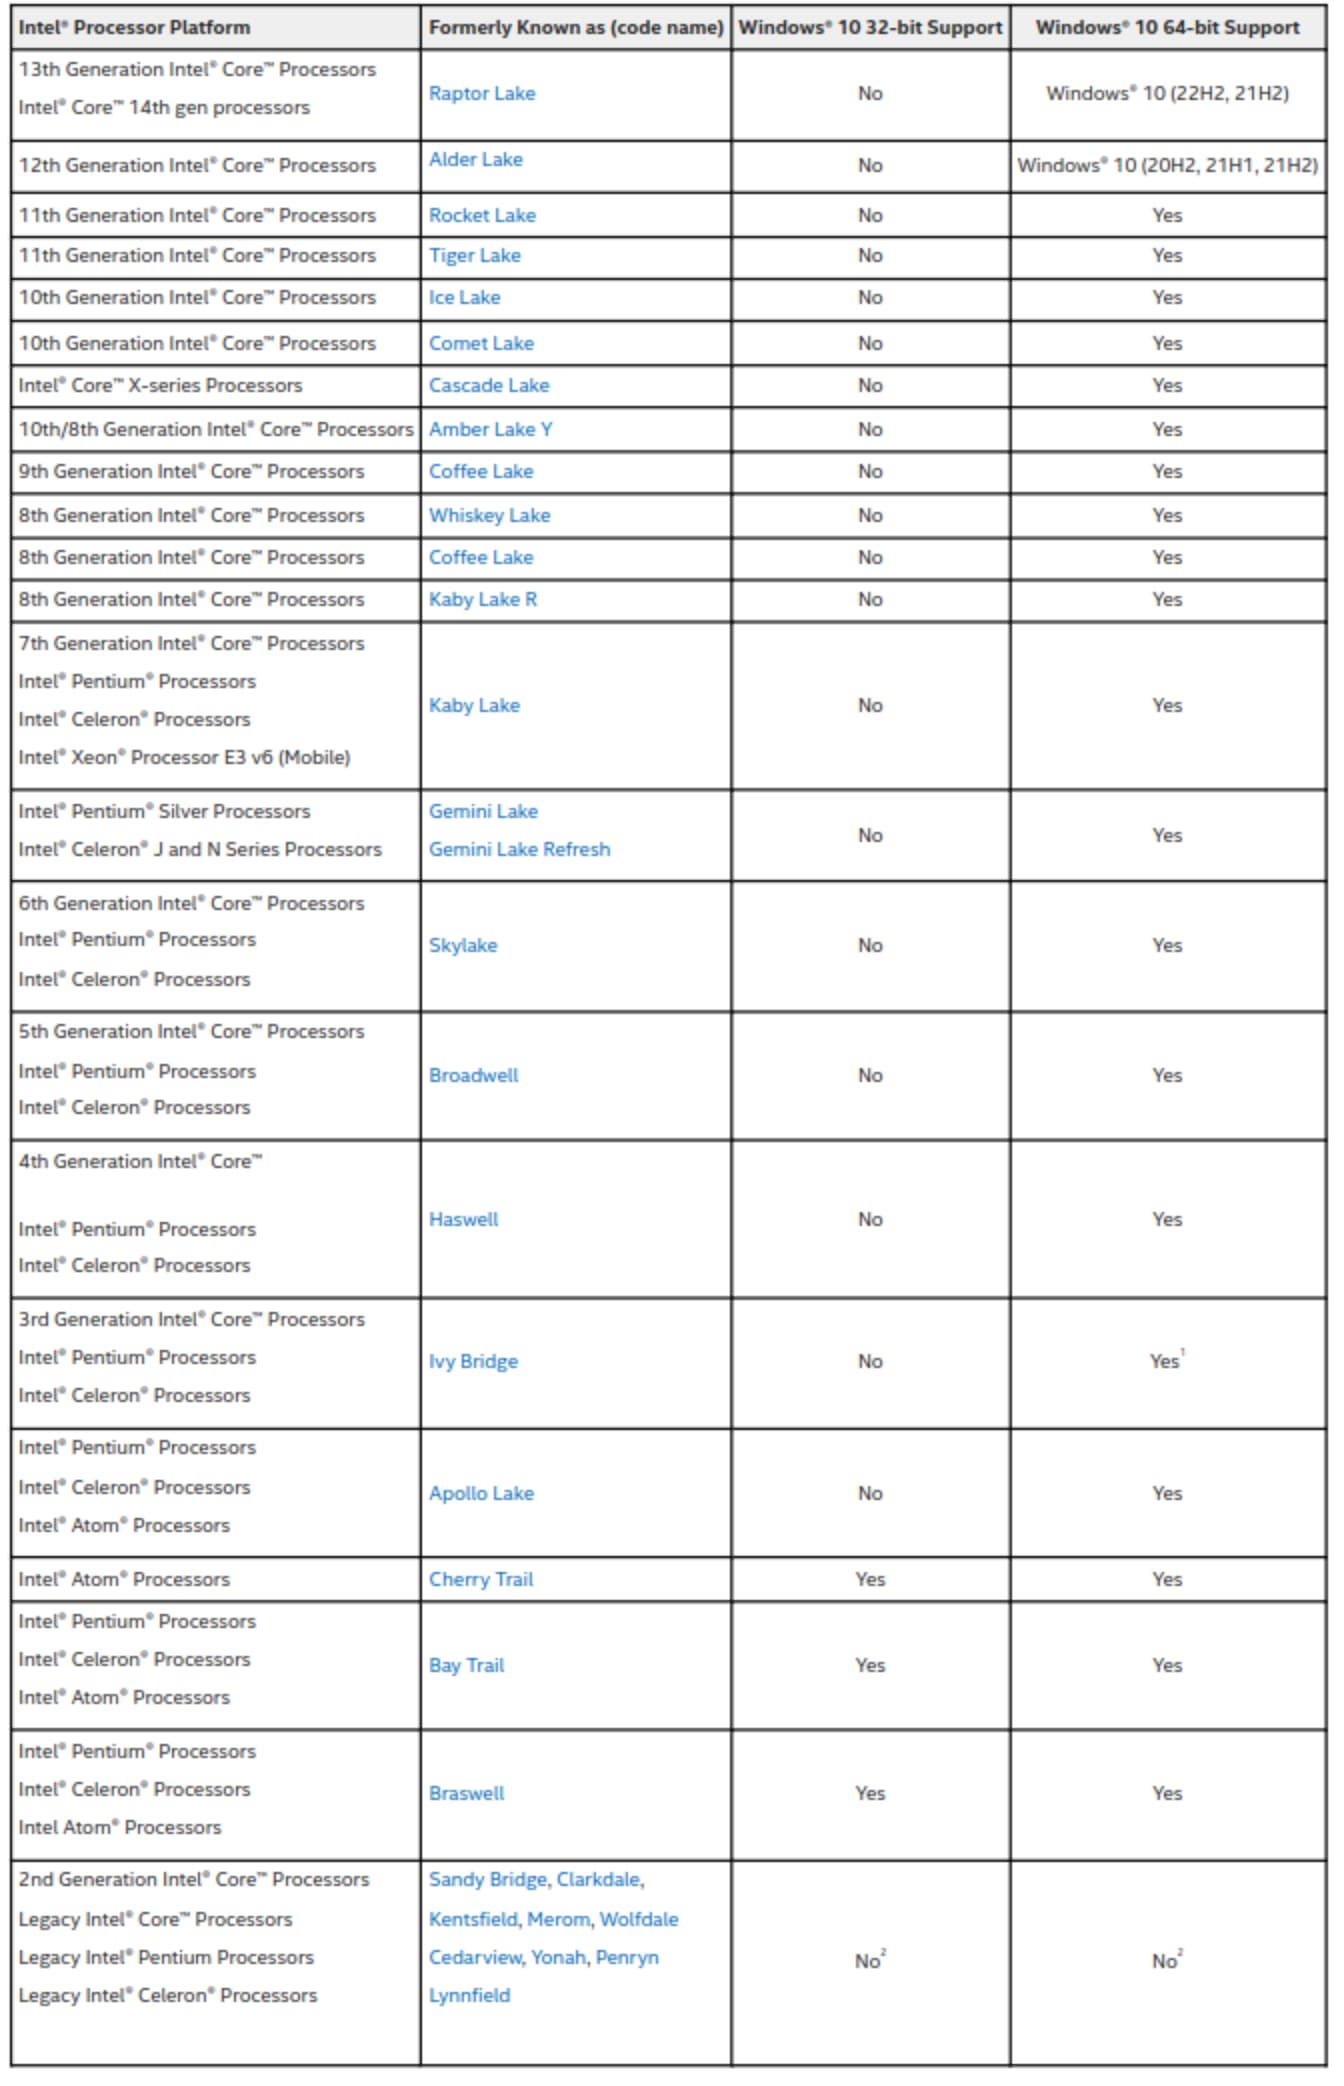 Tableau de compatibilité des processeurs Intel avec Windows 10